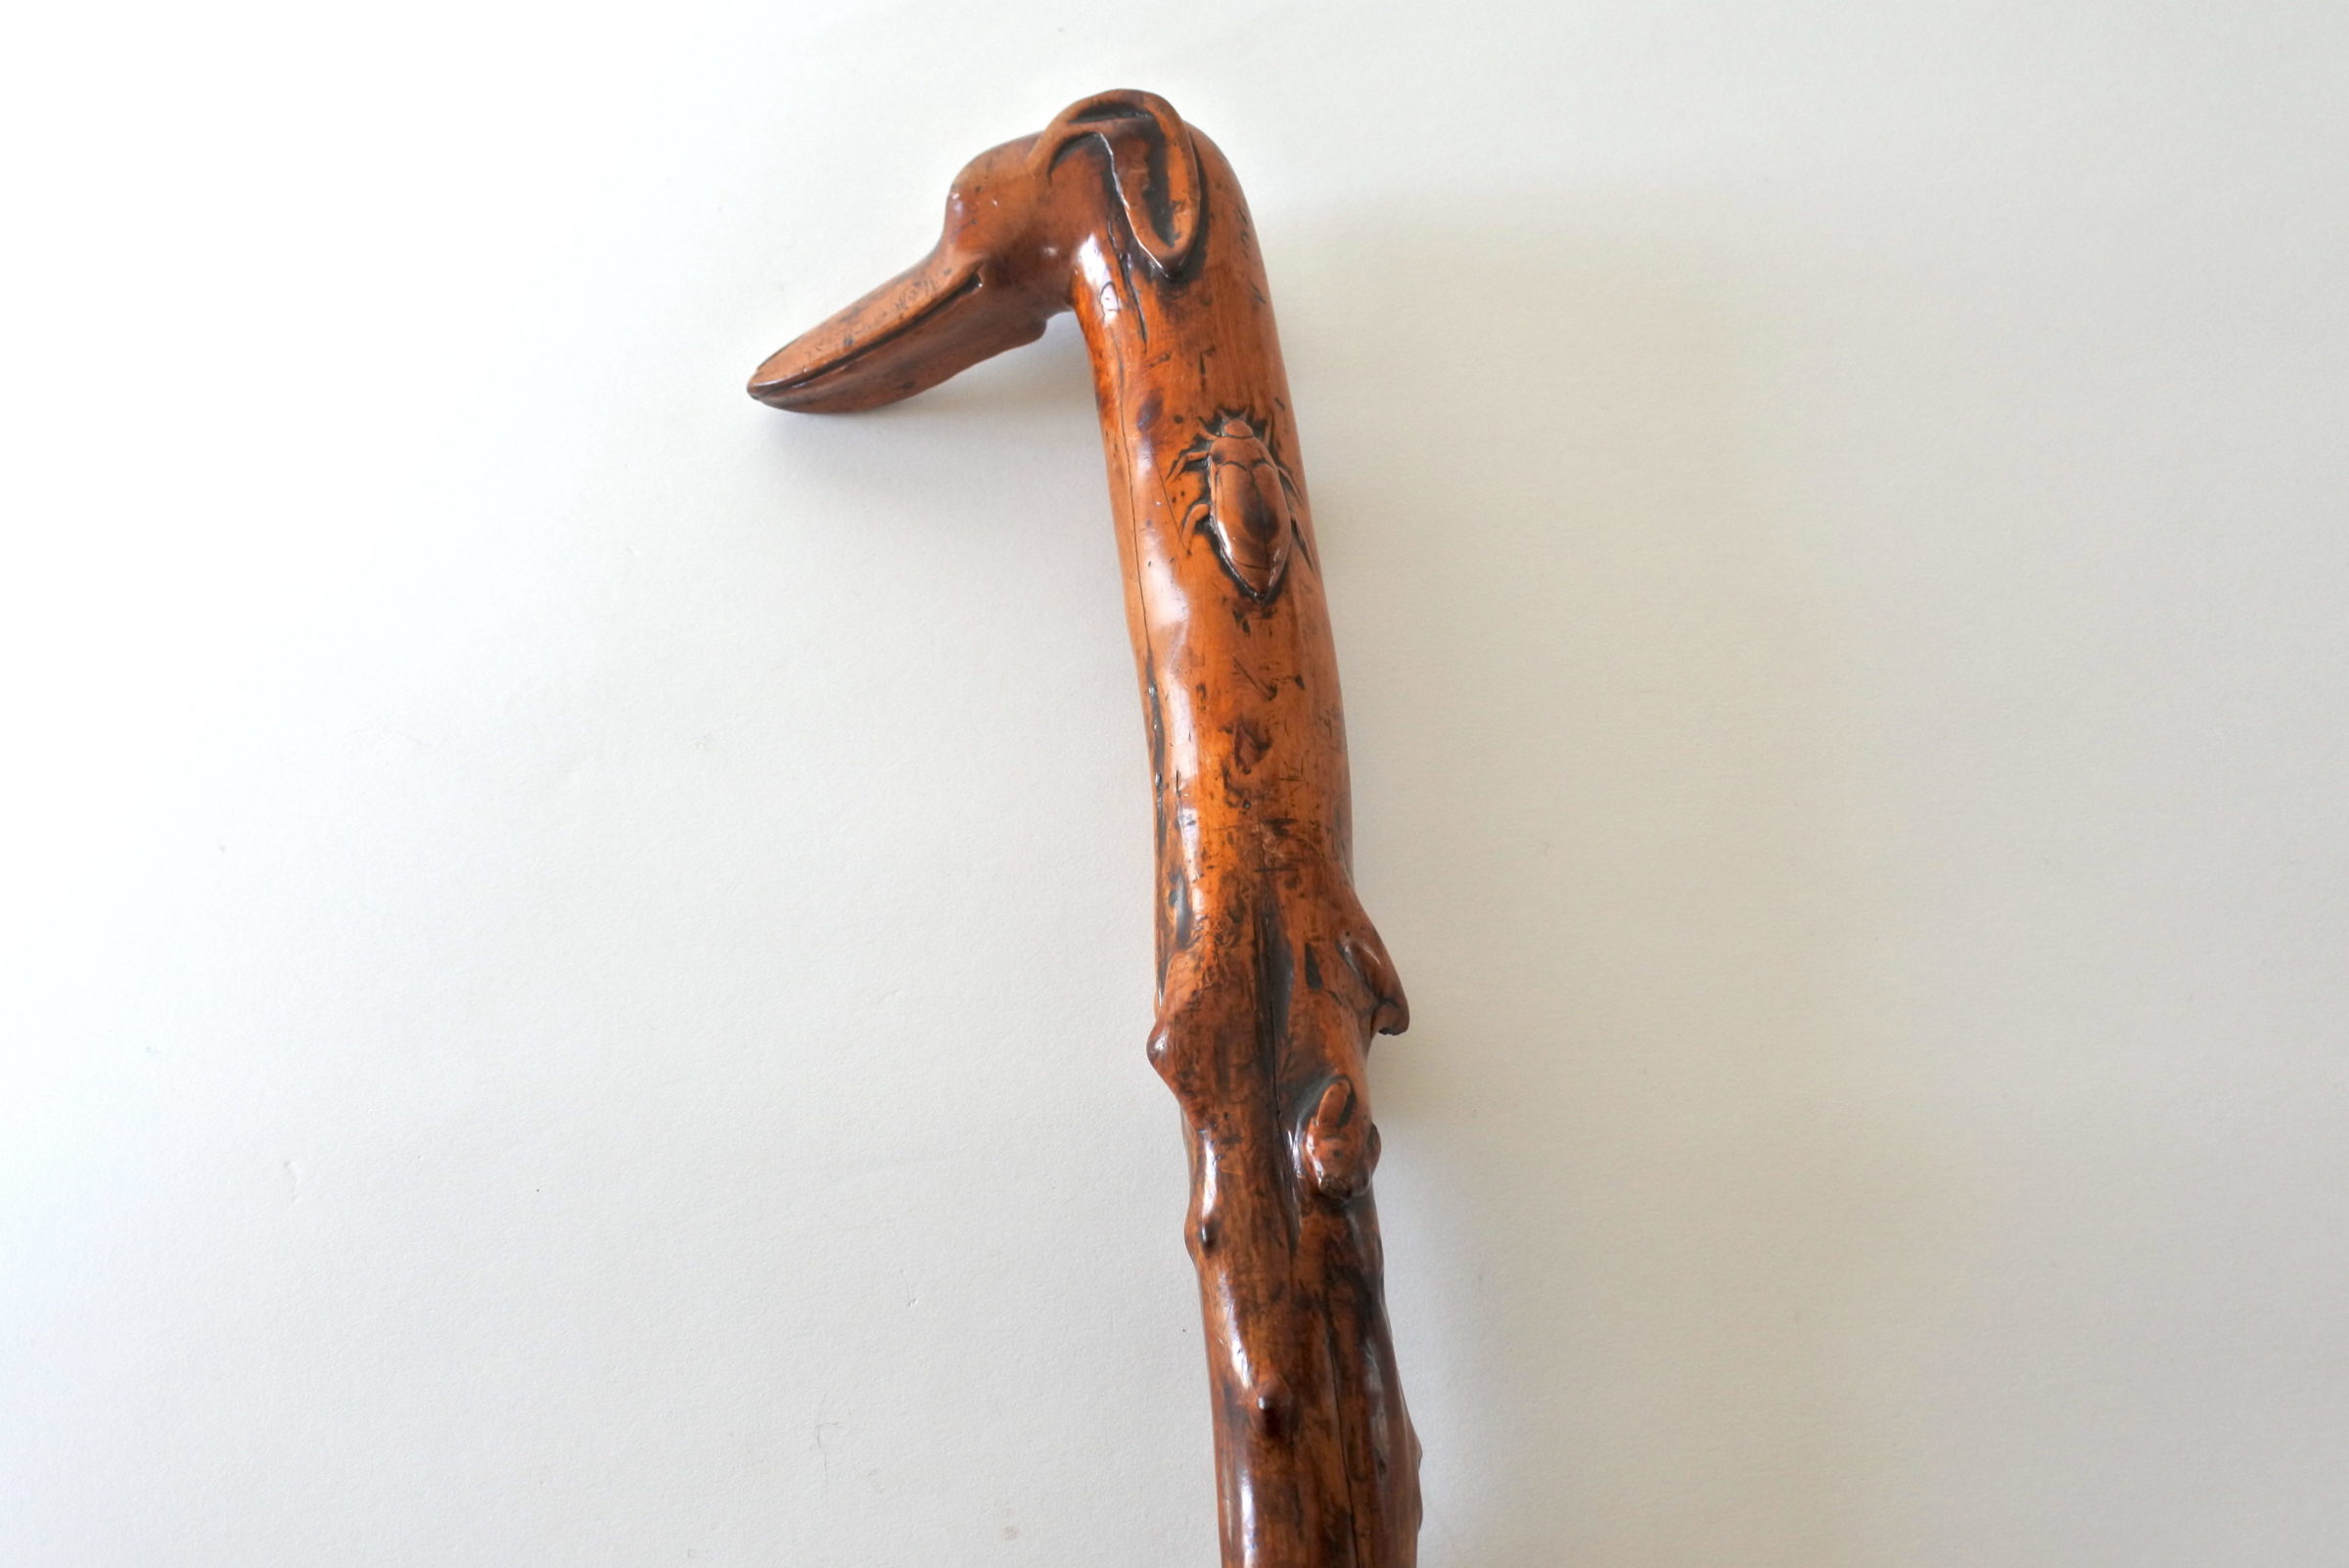 Bastone monossilo in legno scolpito con impugnatura a forma di testa di cane